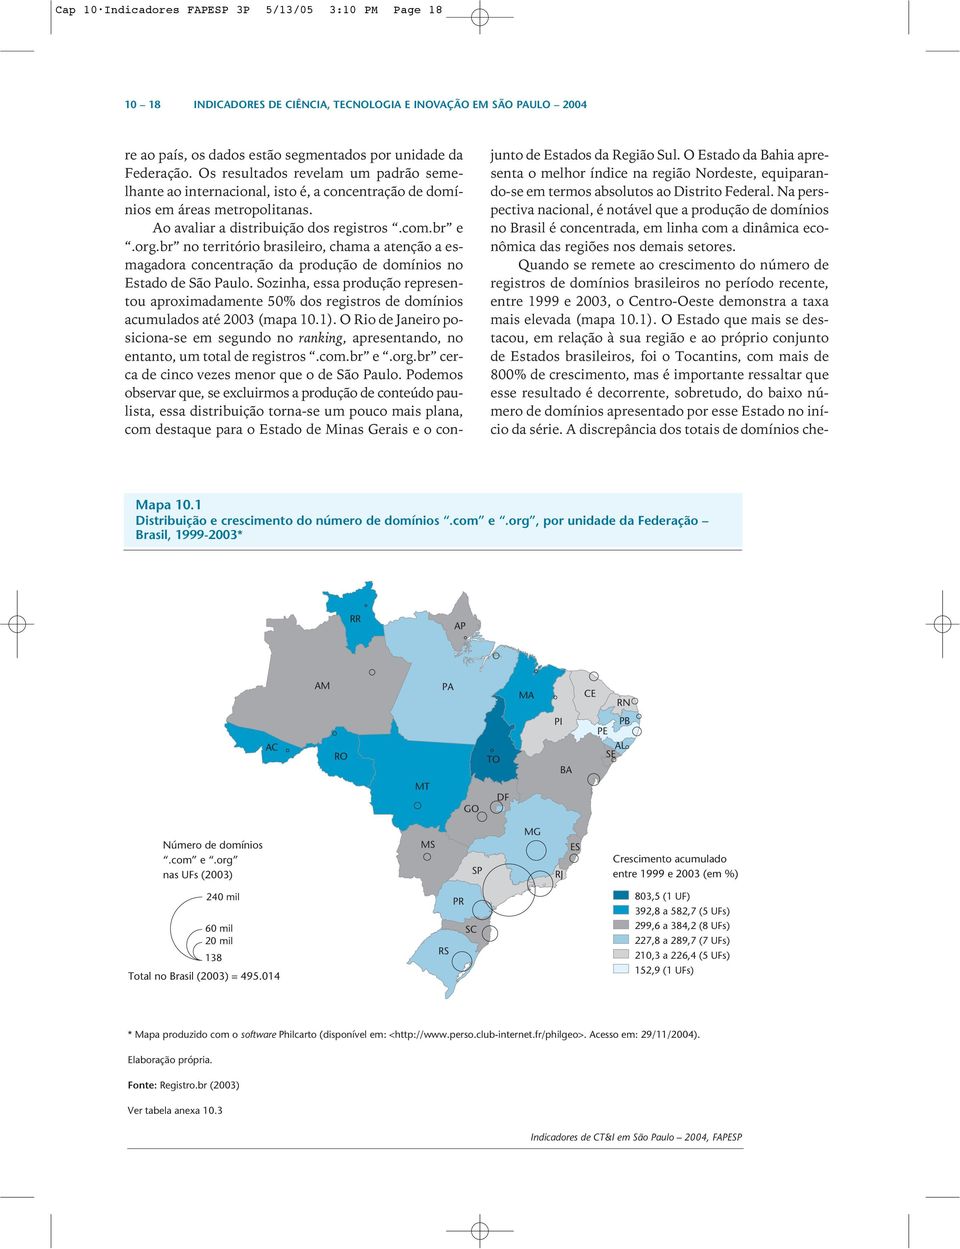 Na perspectiva nacional, é notável que a produção de domínios no Brasil é concentrada, em linha com a dinâmica econômica das regiões nos demais setores.